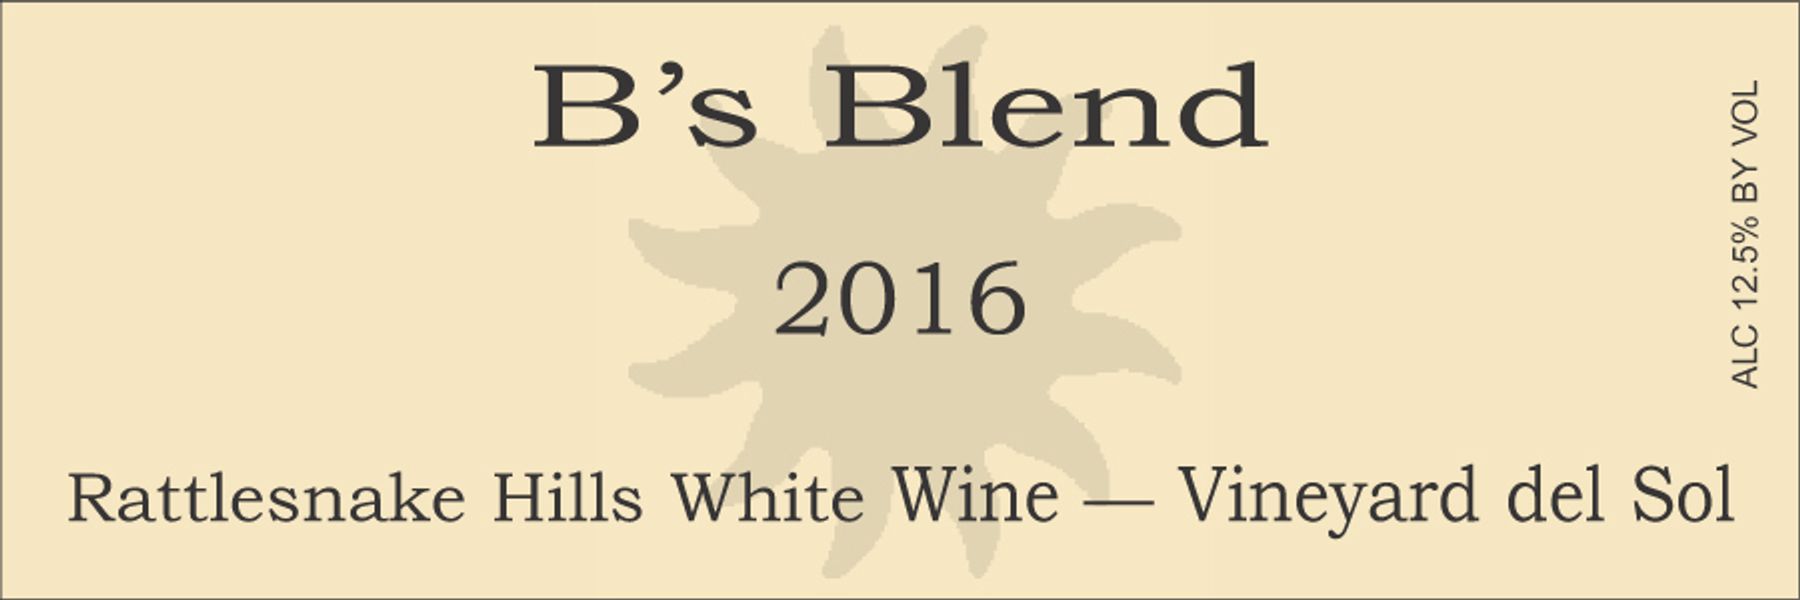 2016 B's Blend